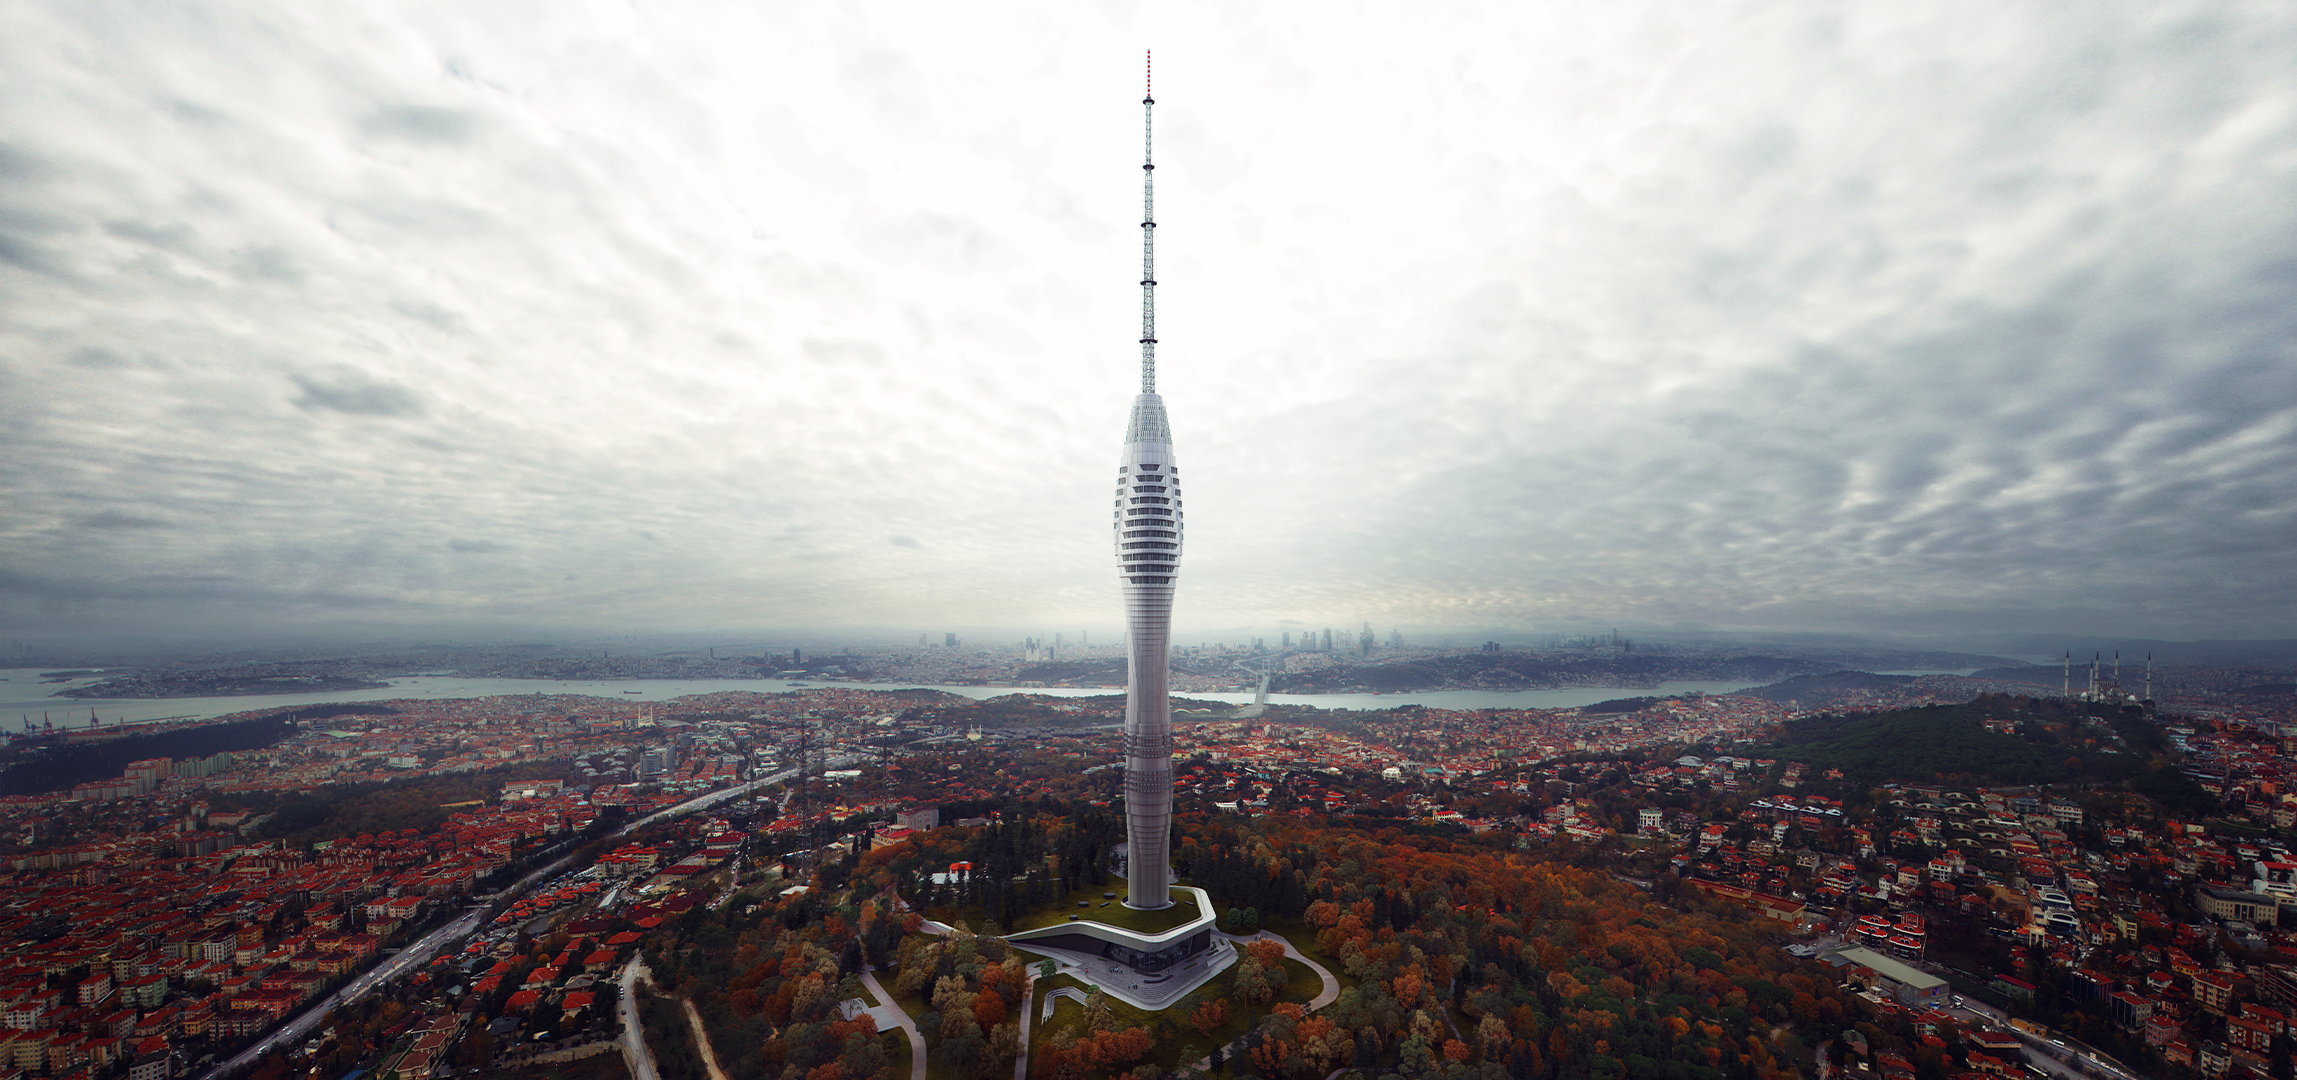 istanbul tv radio tower melike altinisik architects